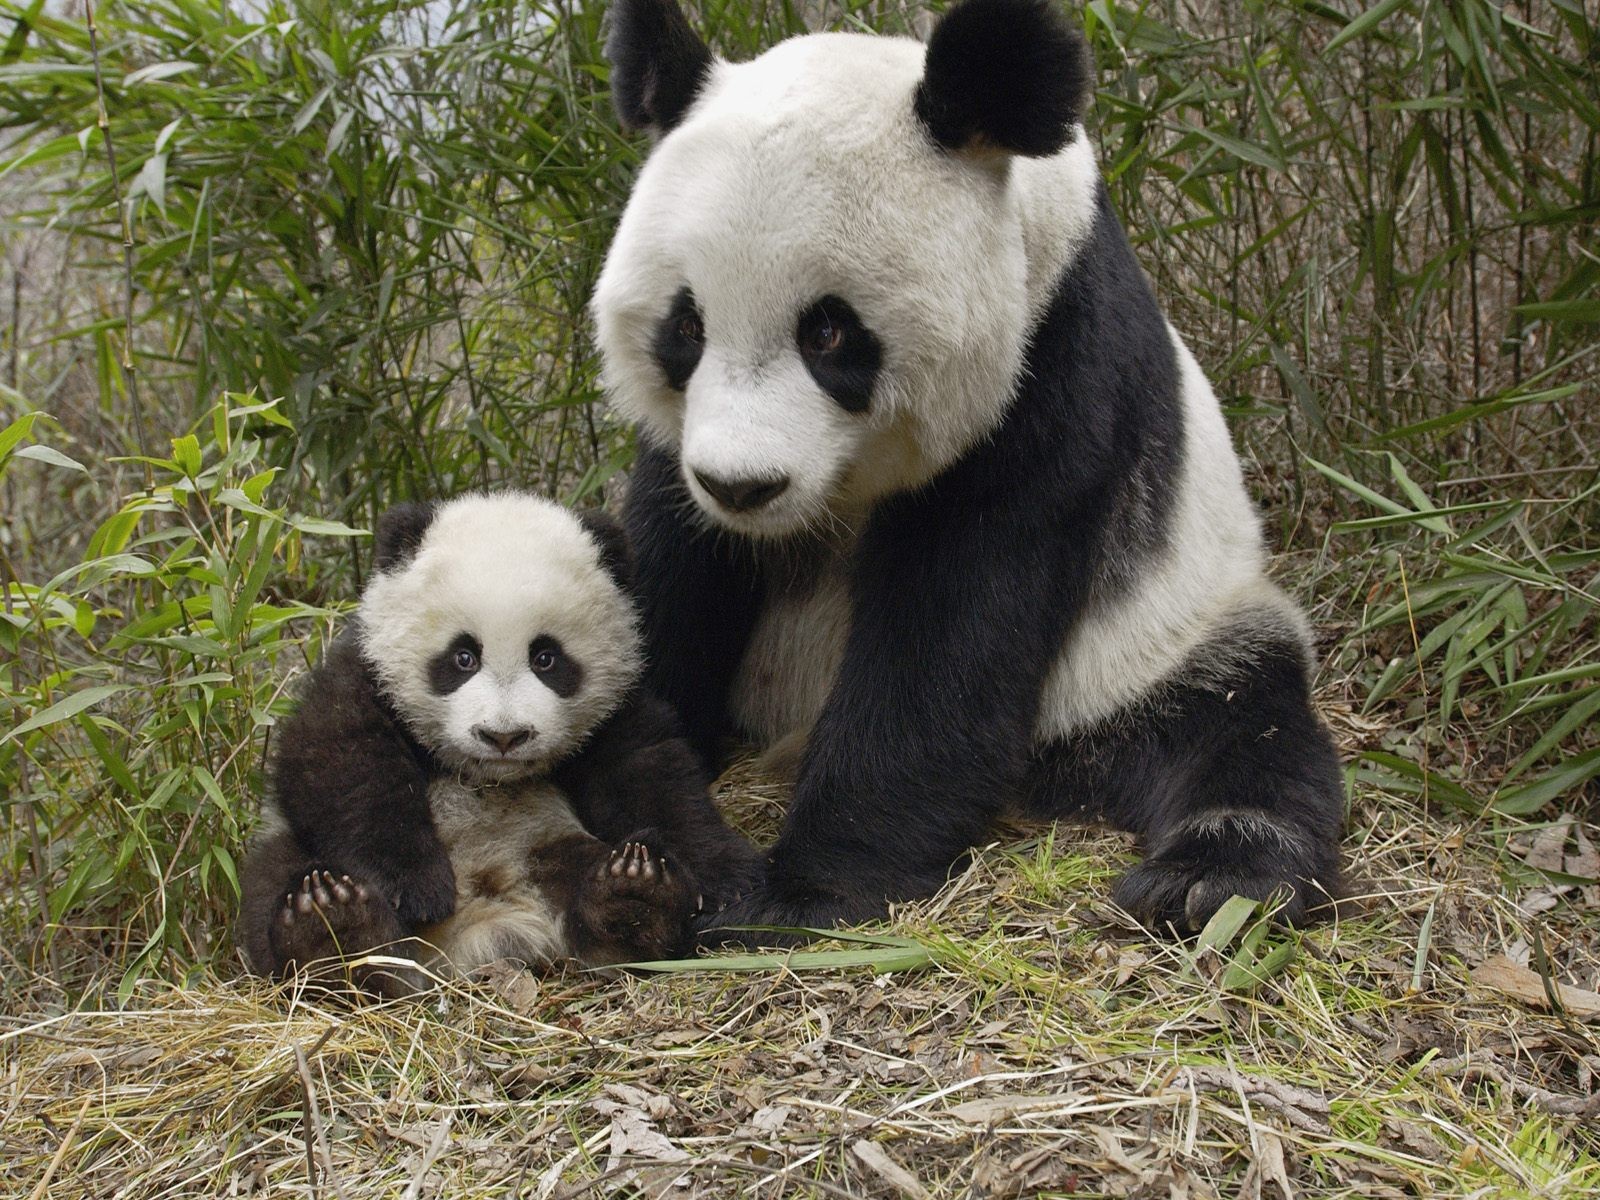 General 1600x1200 animals panda baby animals mammals bears